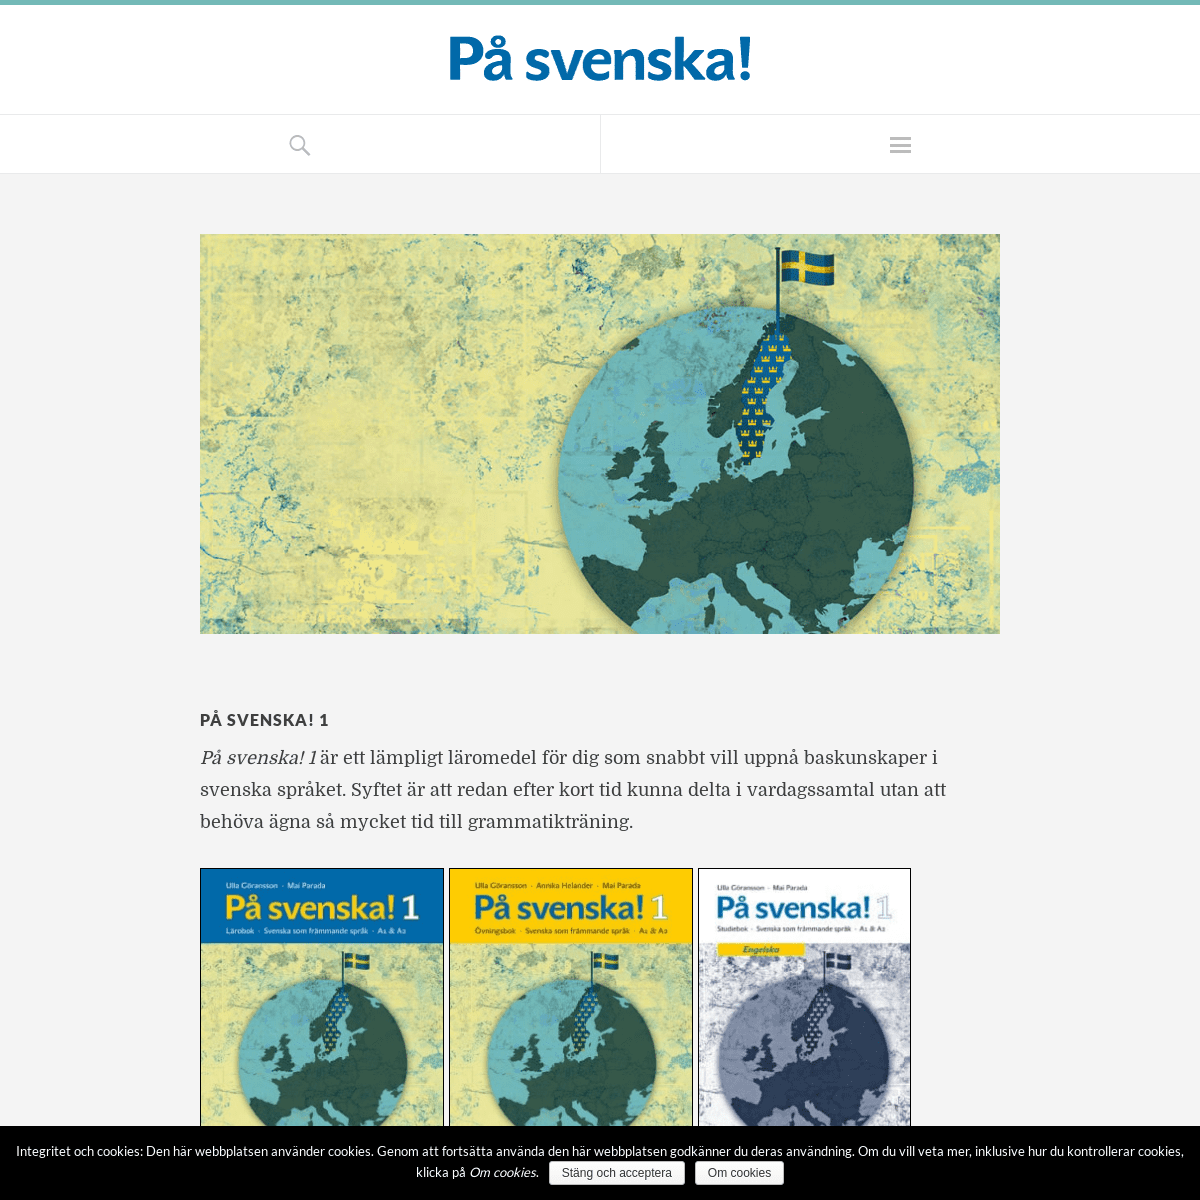 A complete backup of pasvenska123.se